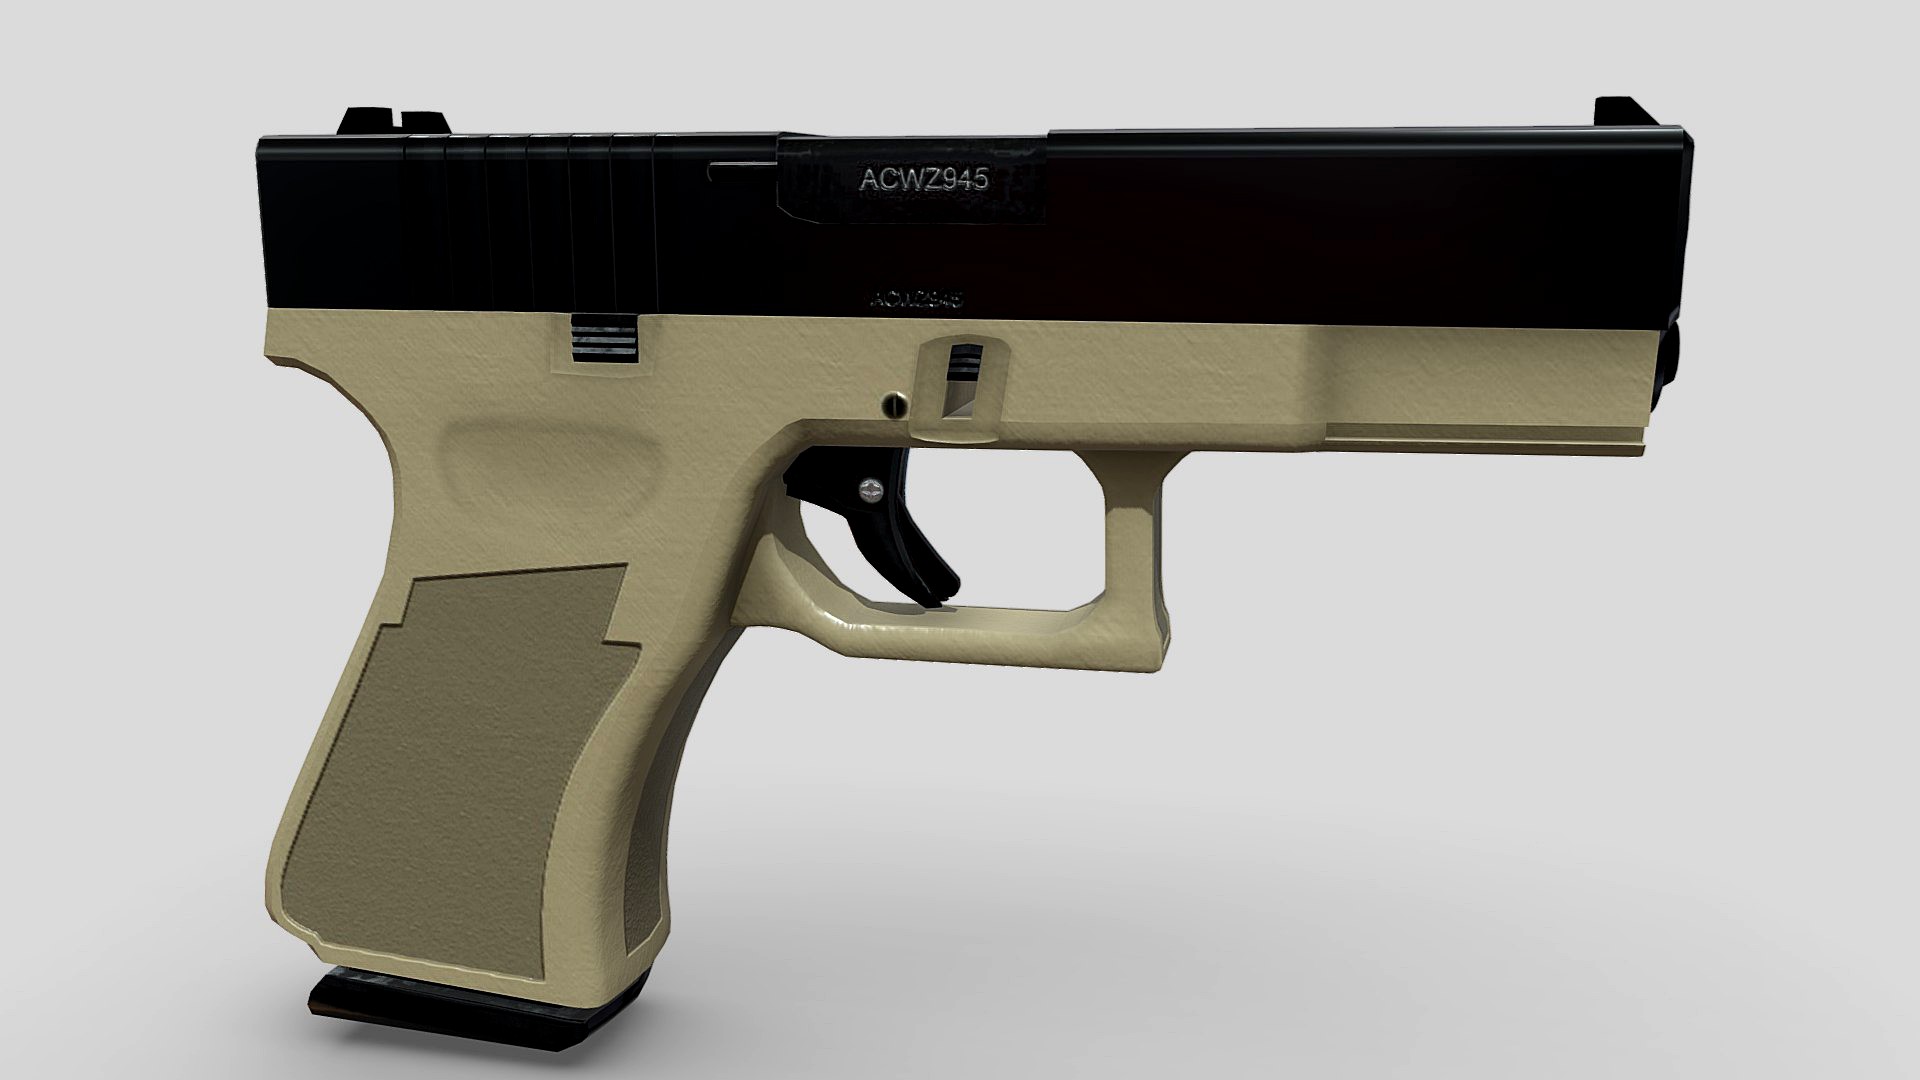 Modified 9mm pistol